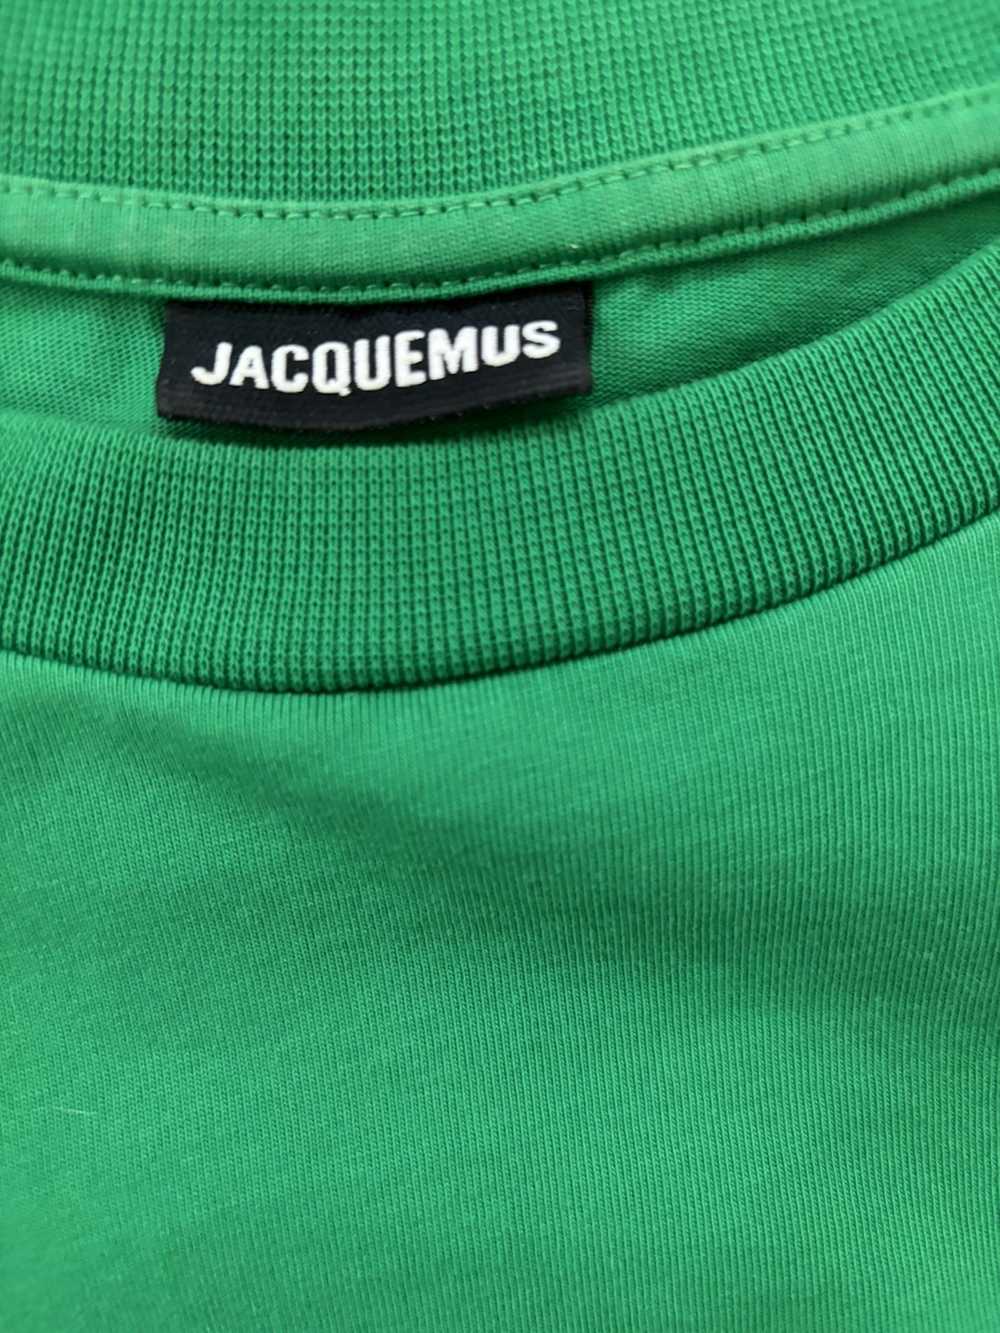 Jacquemus Jacquemus Le T-shirt Tennis T-Shirt - image 4